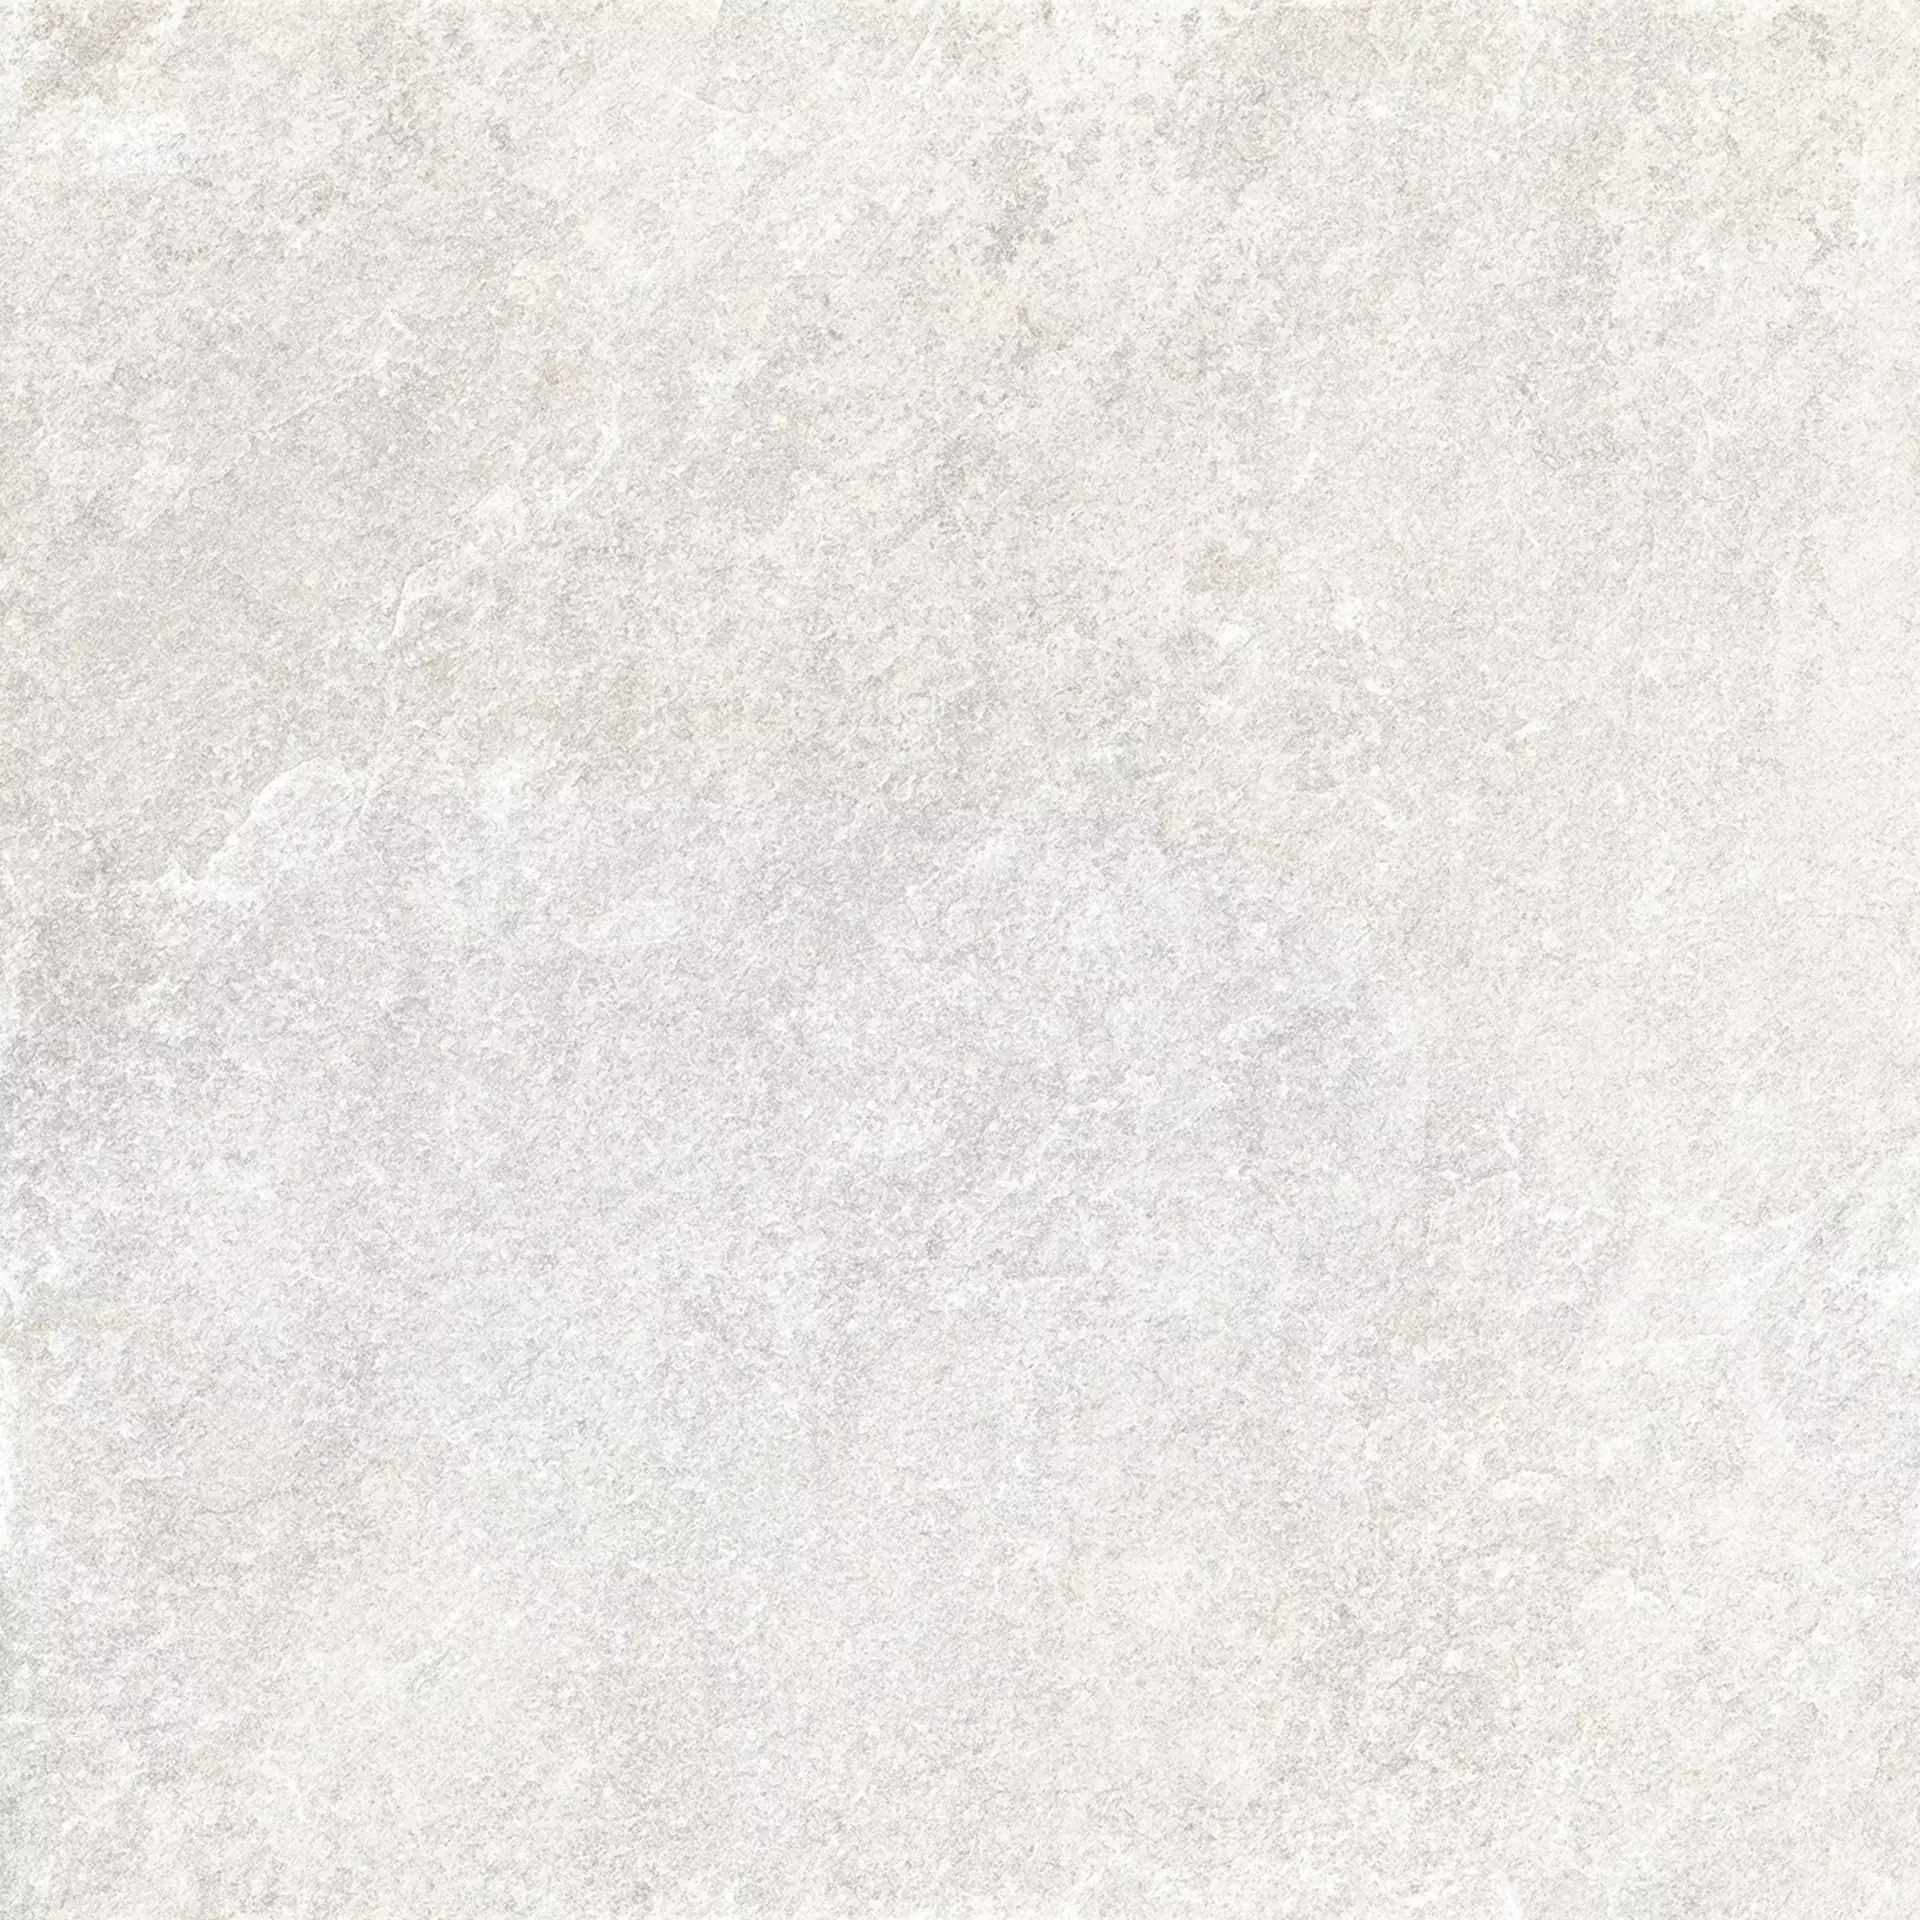 Rondine Quarzi White Naturale J87289 60,5x60,5cm 9,5mm